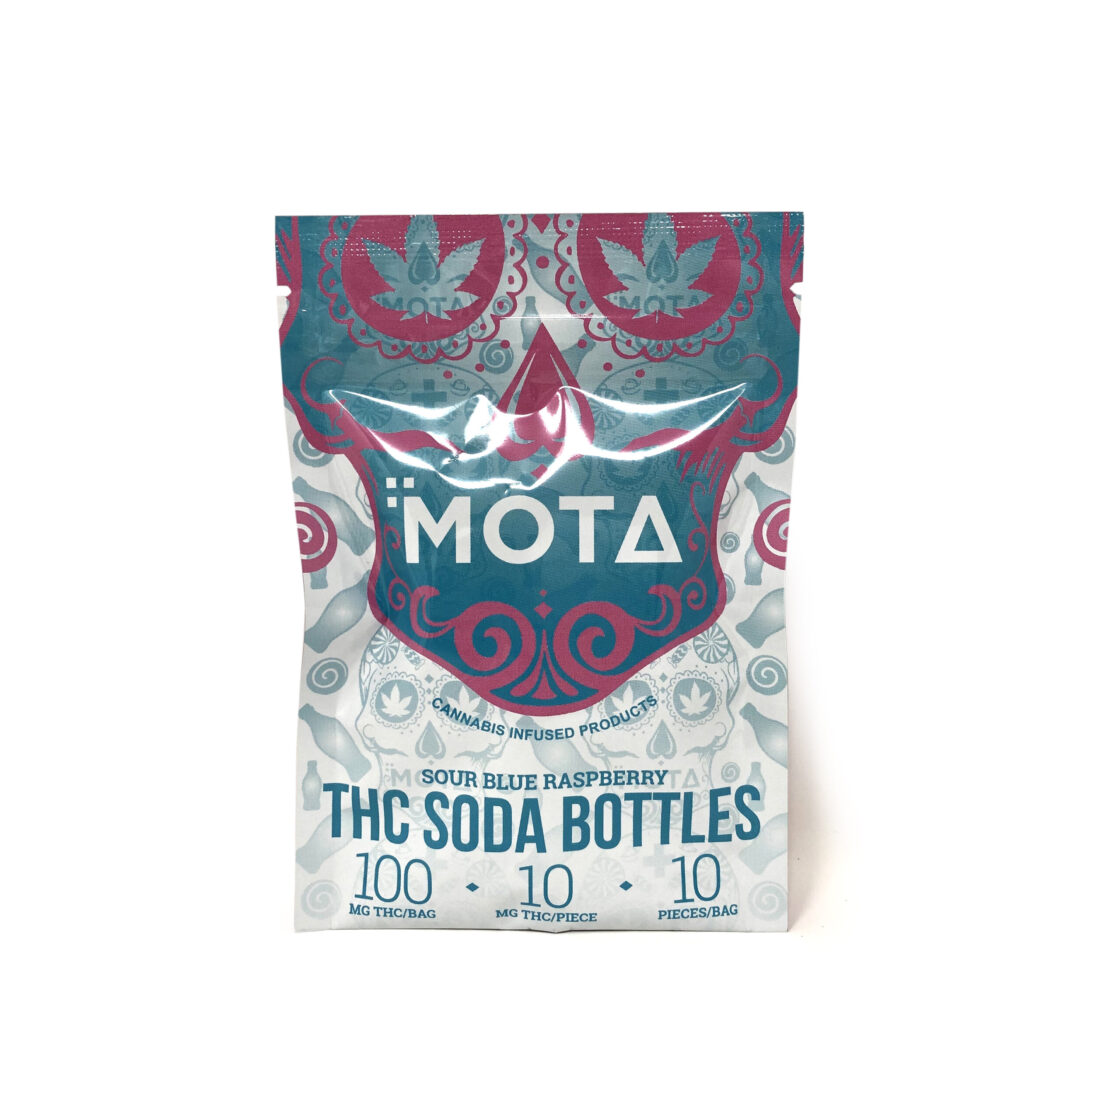 Mota Sour Blue Raspberry Thc Soda Bottles Scaled